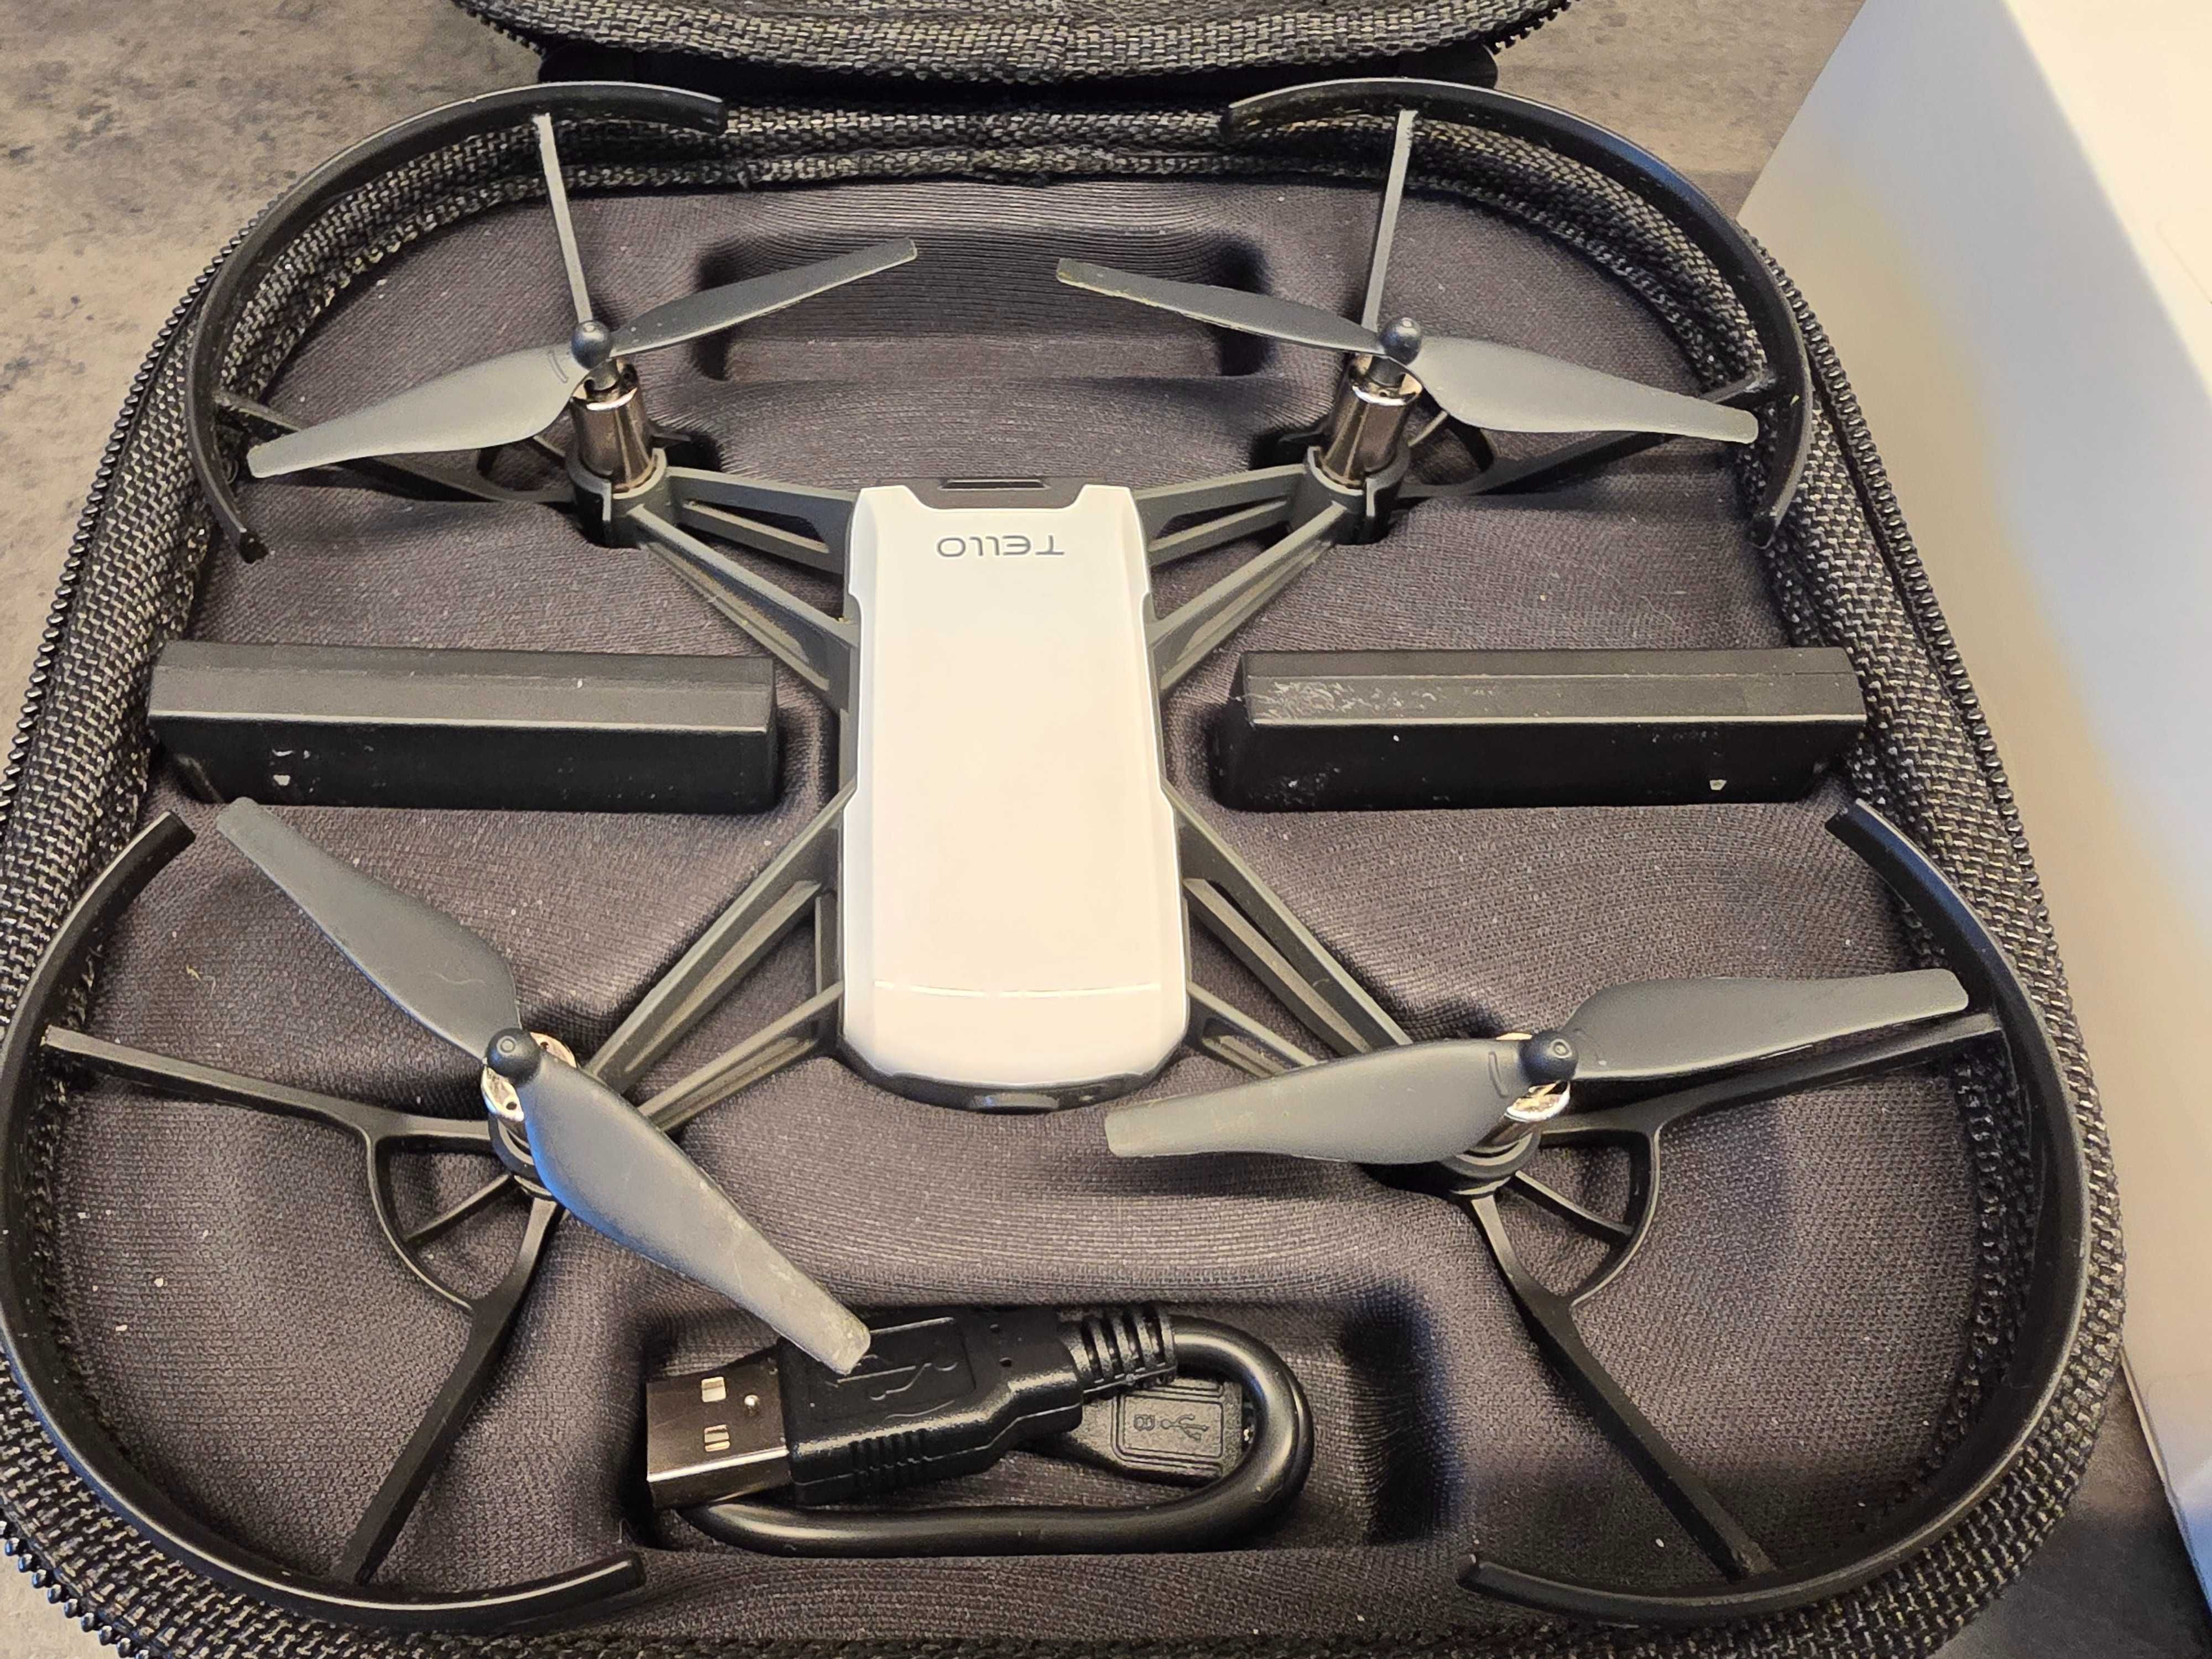 Dron DJI Tello zestaw gotowy do lotu (3 baterie)